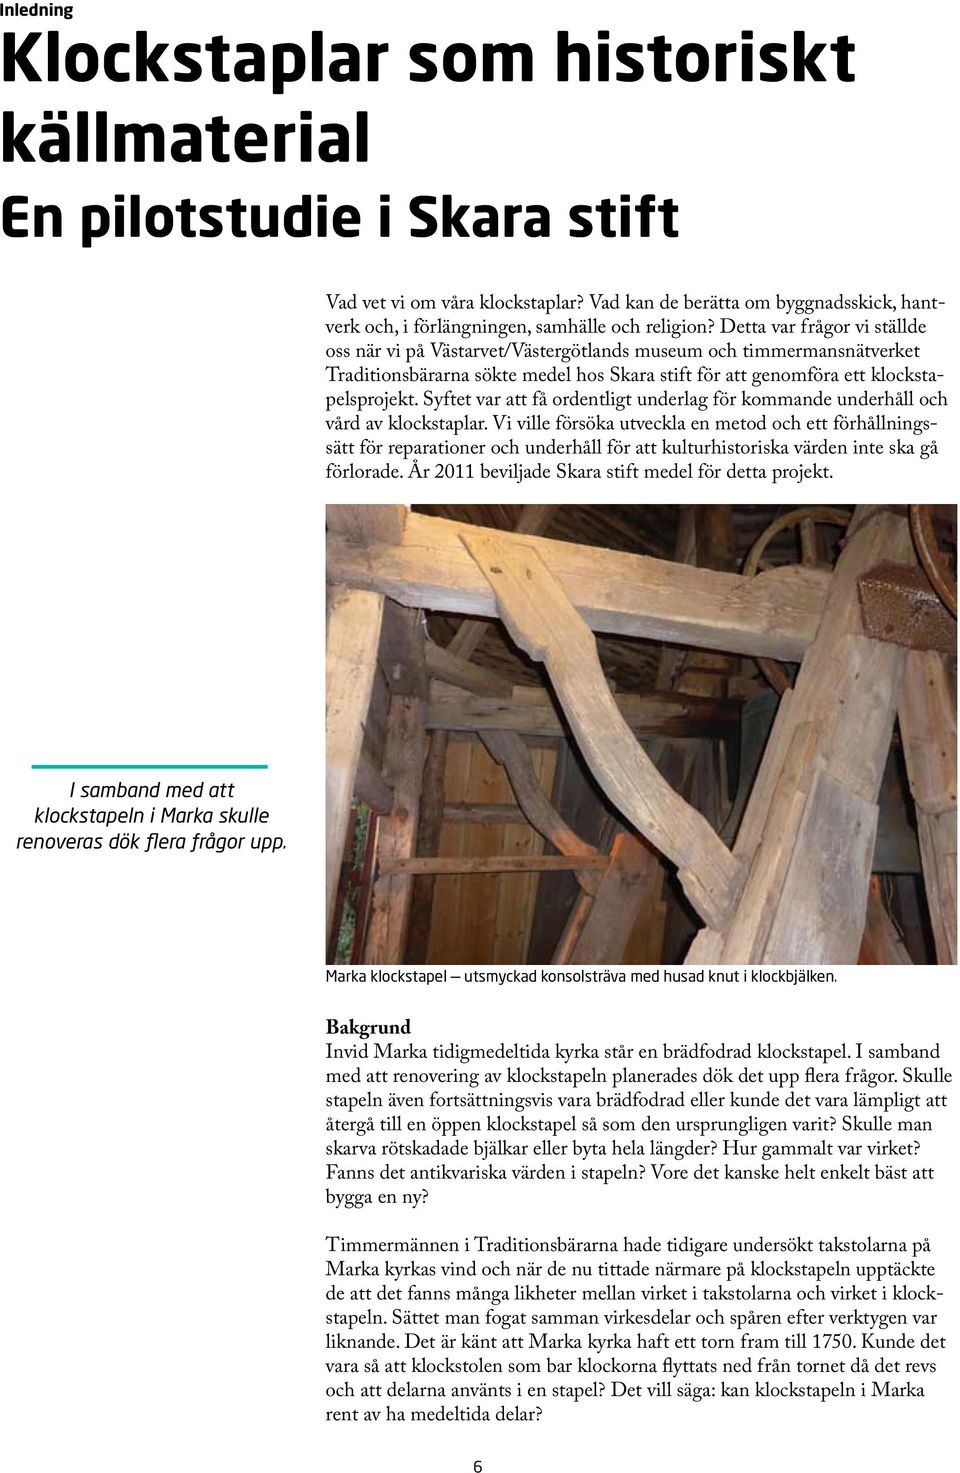 Detta var frågor vi ställde oss när vi på Västarvet/Västergötlands museum och timmermansnätverket Traditionsbärarna sökte medel hos Skara stift för att genomföra ett klockstapelsprojekt.